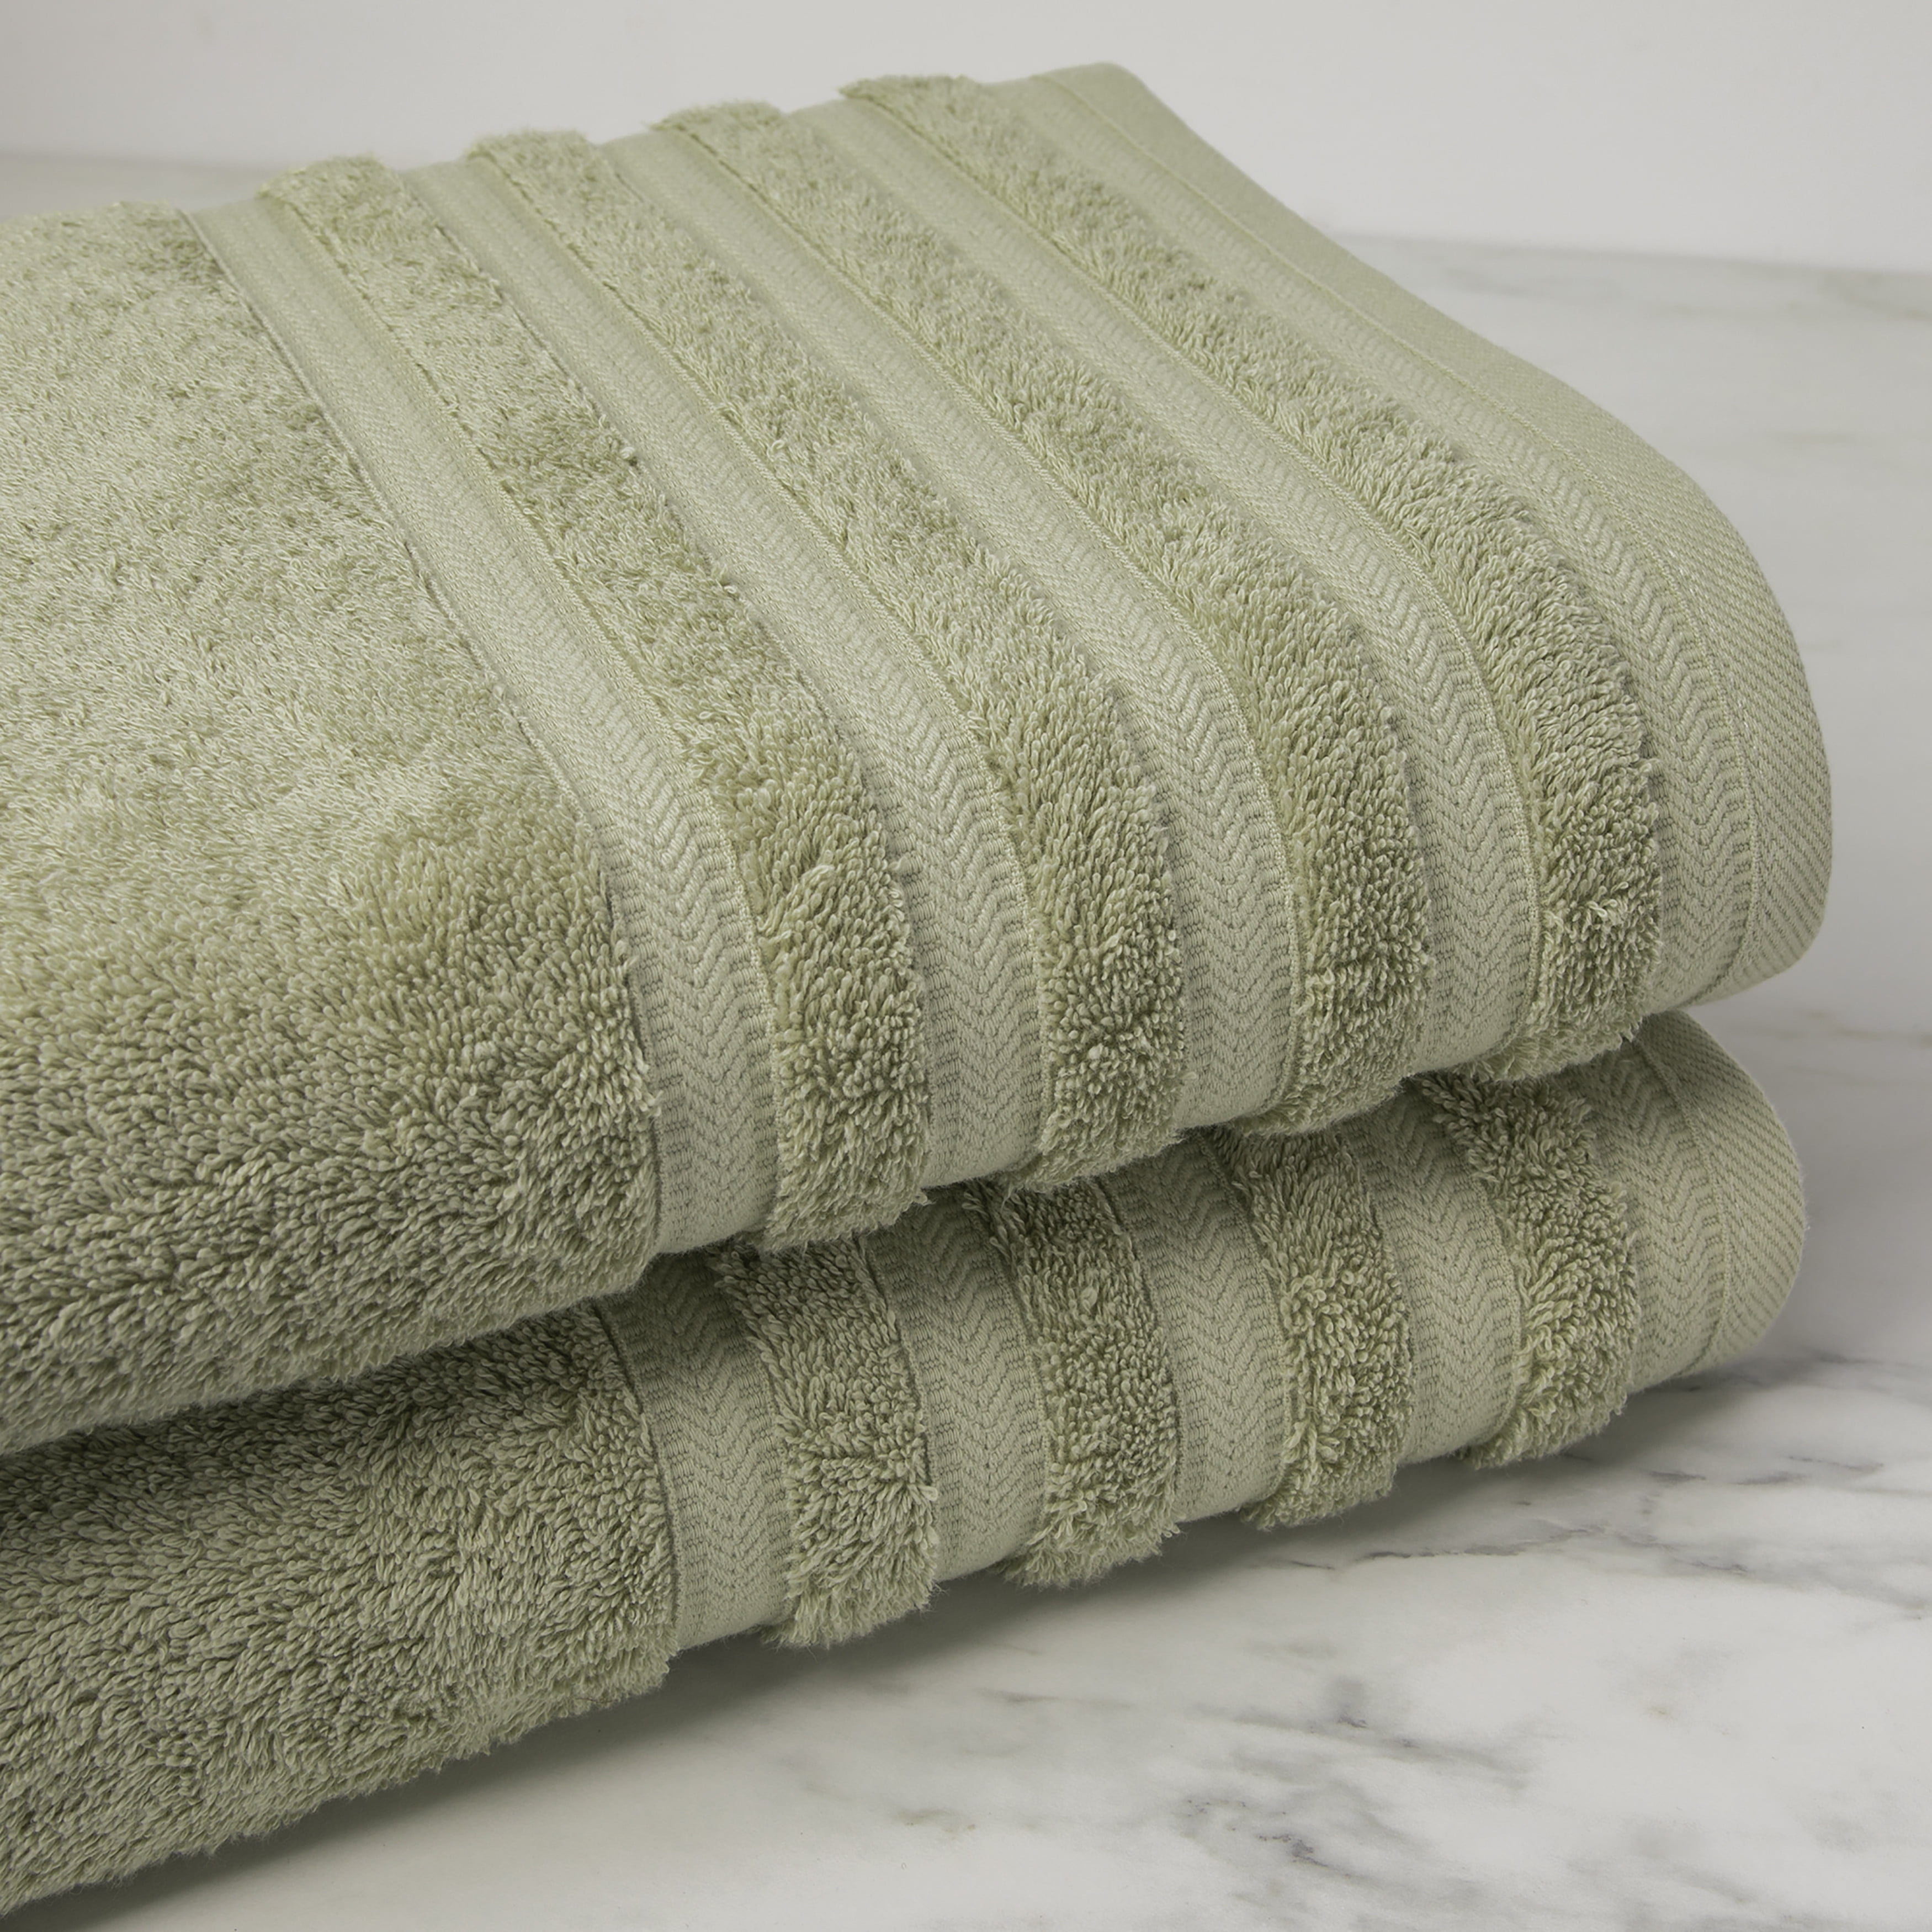 Lavish Home 100% Cotton Hotel 6 Piece Towel Set - Green, 1 unit - Kroger